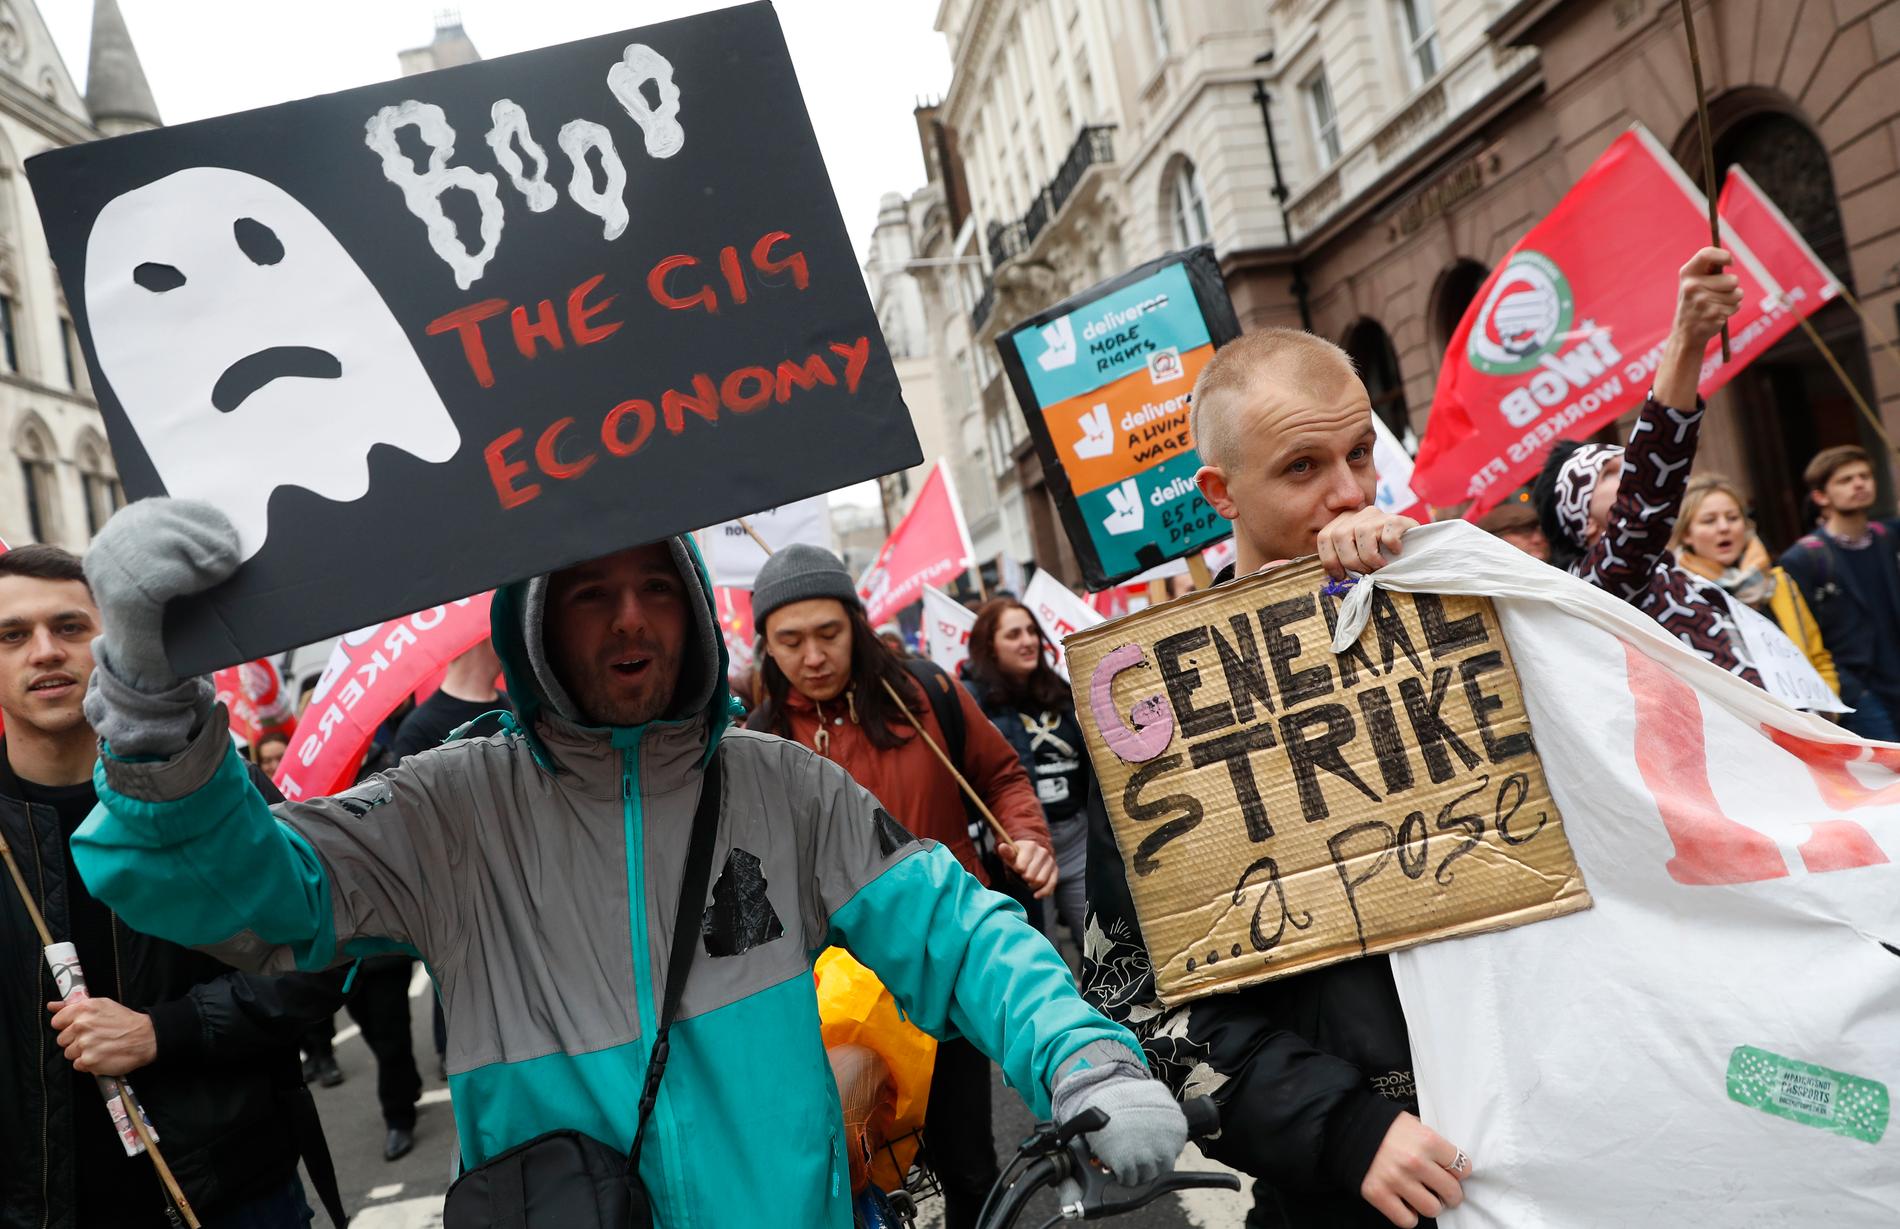 Gigarbetare protesterar i London 2018.